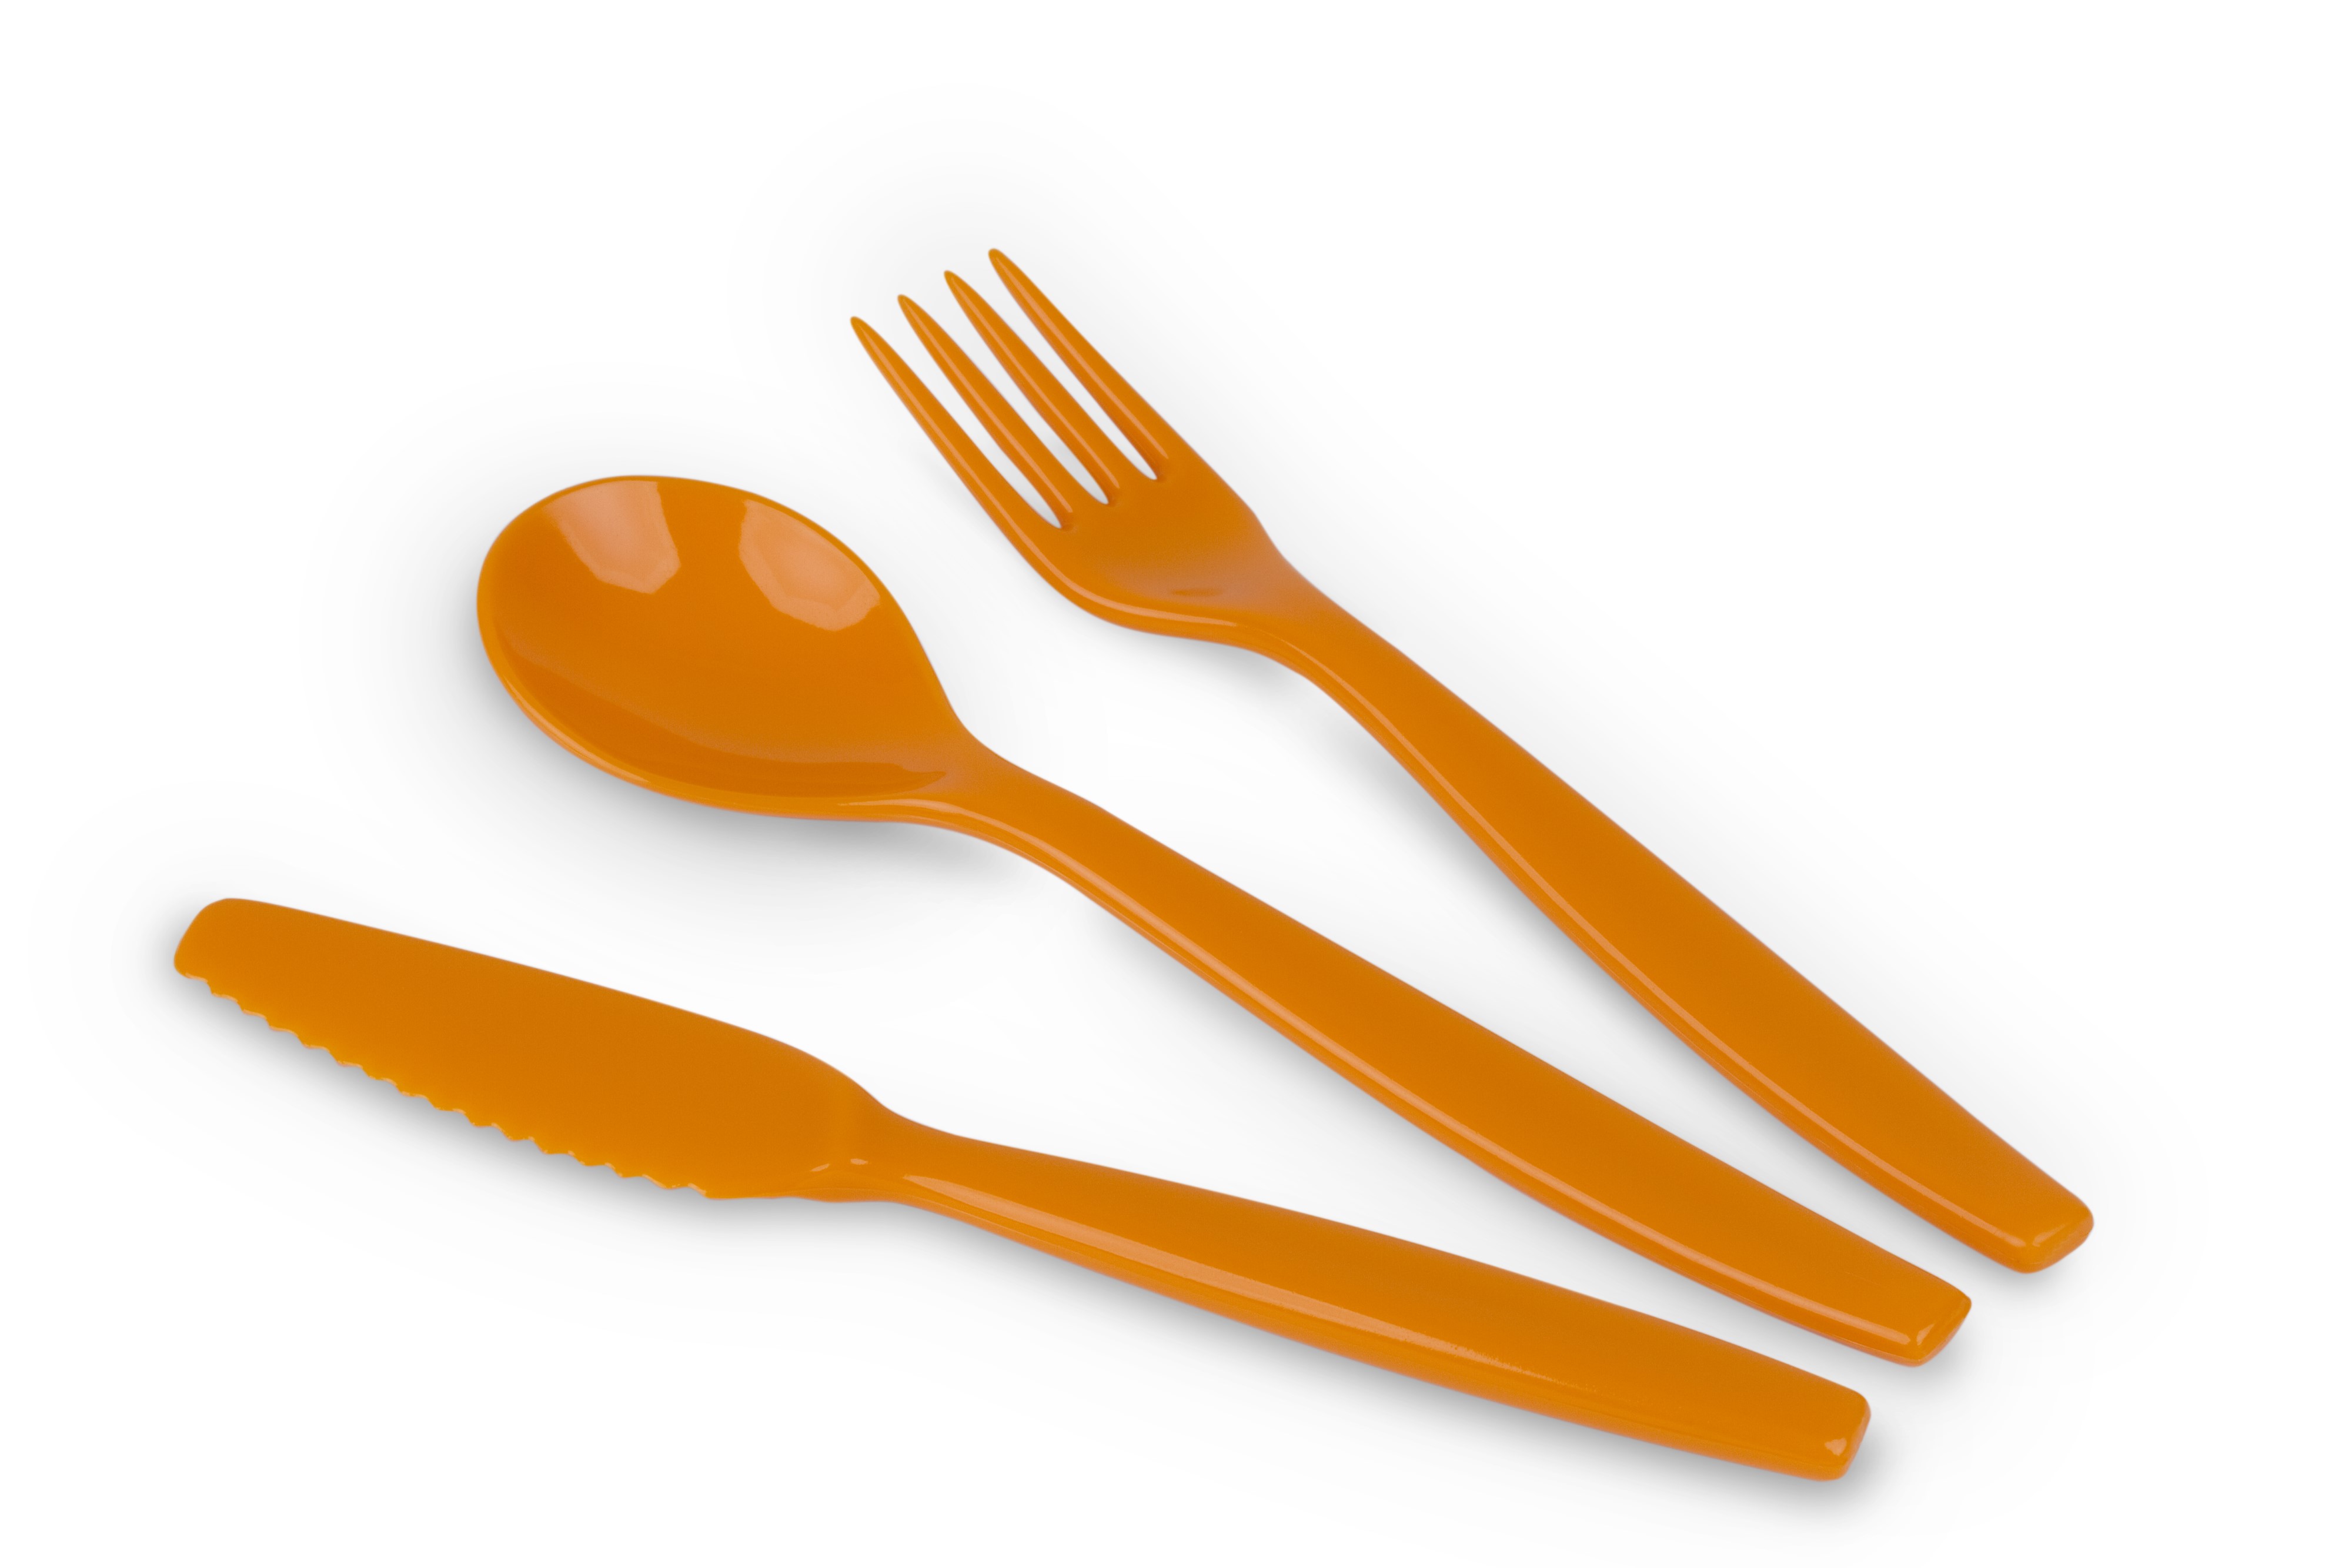 Kinderzeug Besteck-Set BRISE, orange 3-teilig: Messer, Gabel, Löffel, spülmaschinen- geeignet. Länge ca. 16,5 cm, Gewicht 31 g